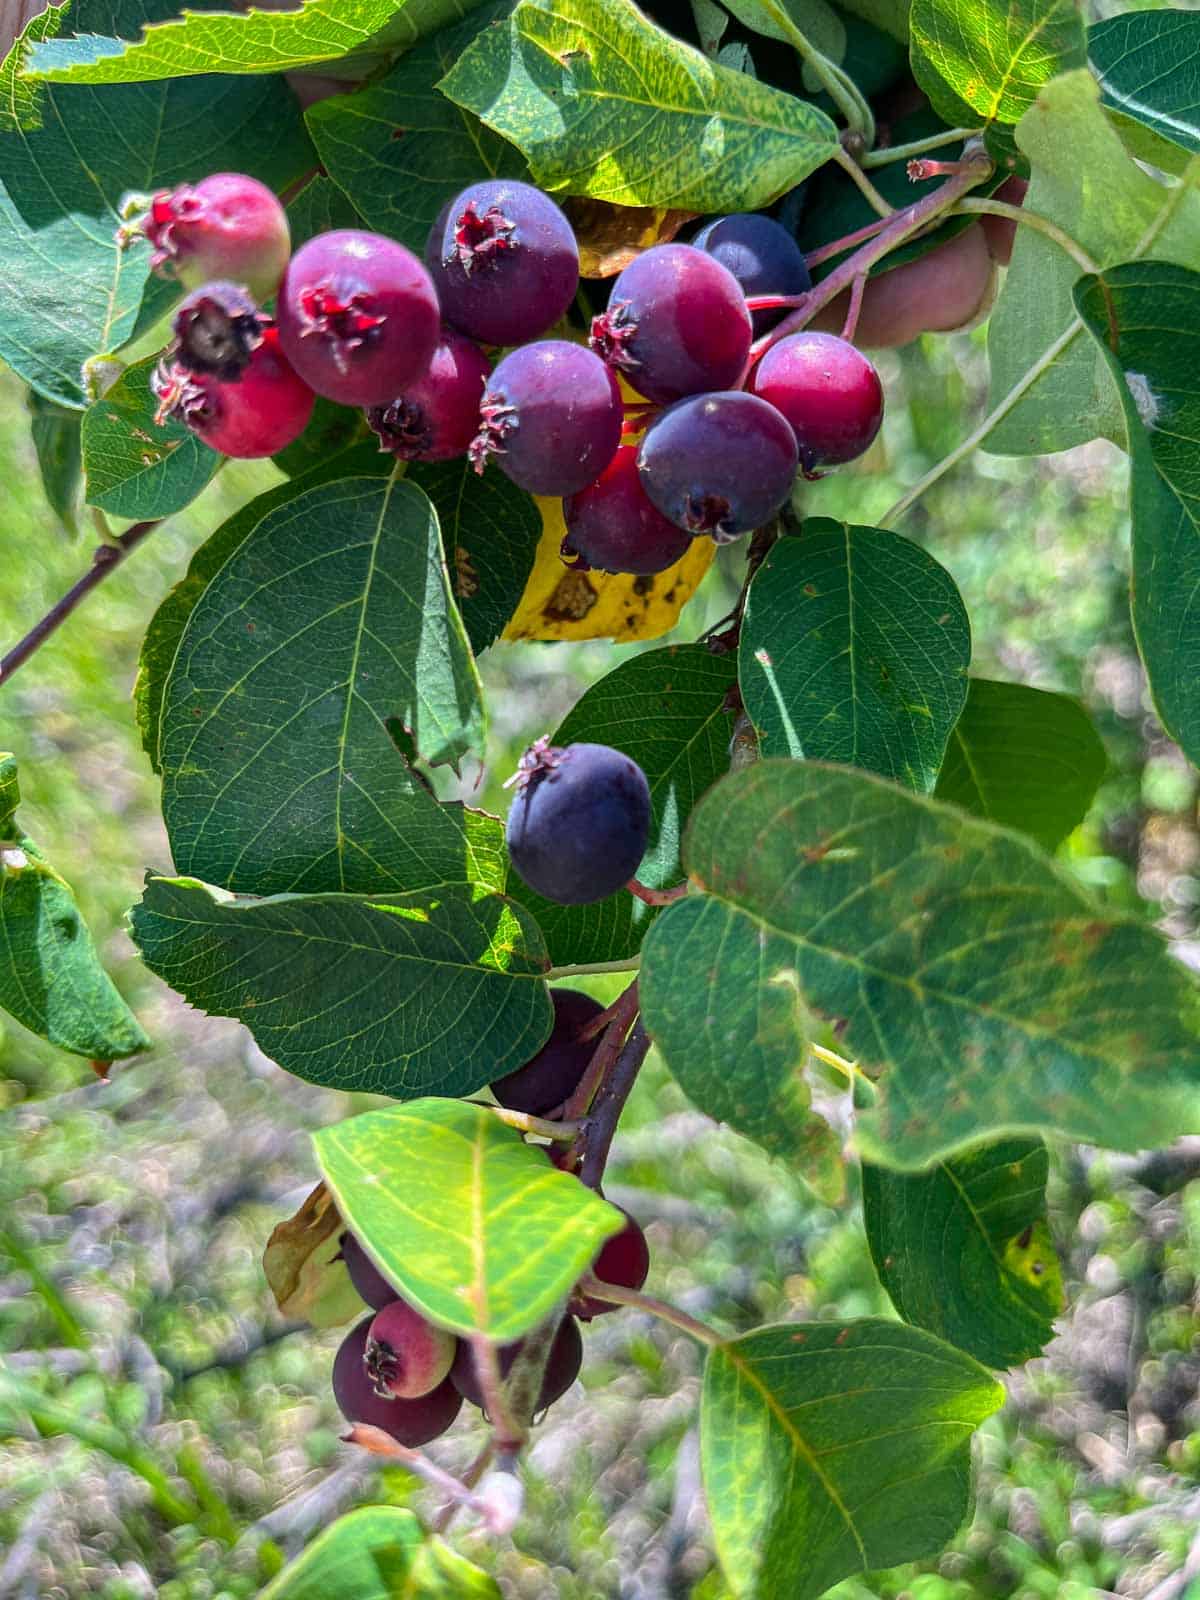 saskatoon berries on the tree